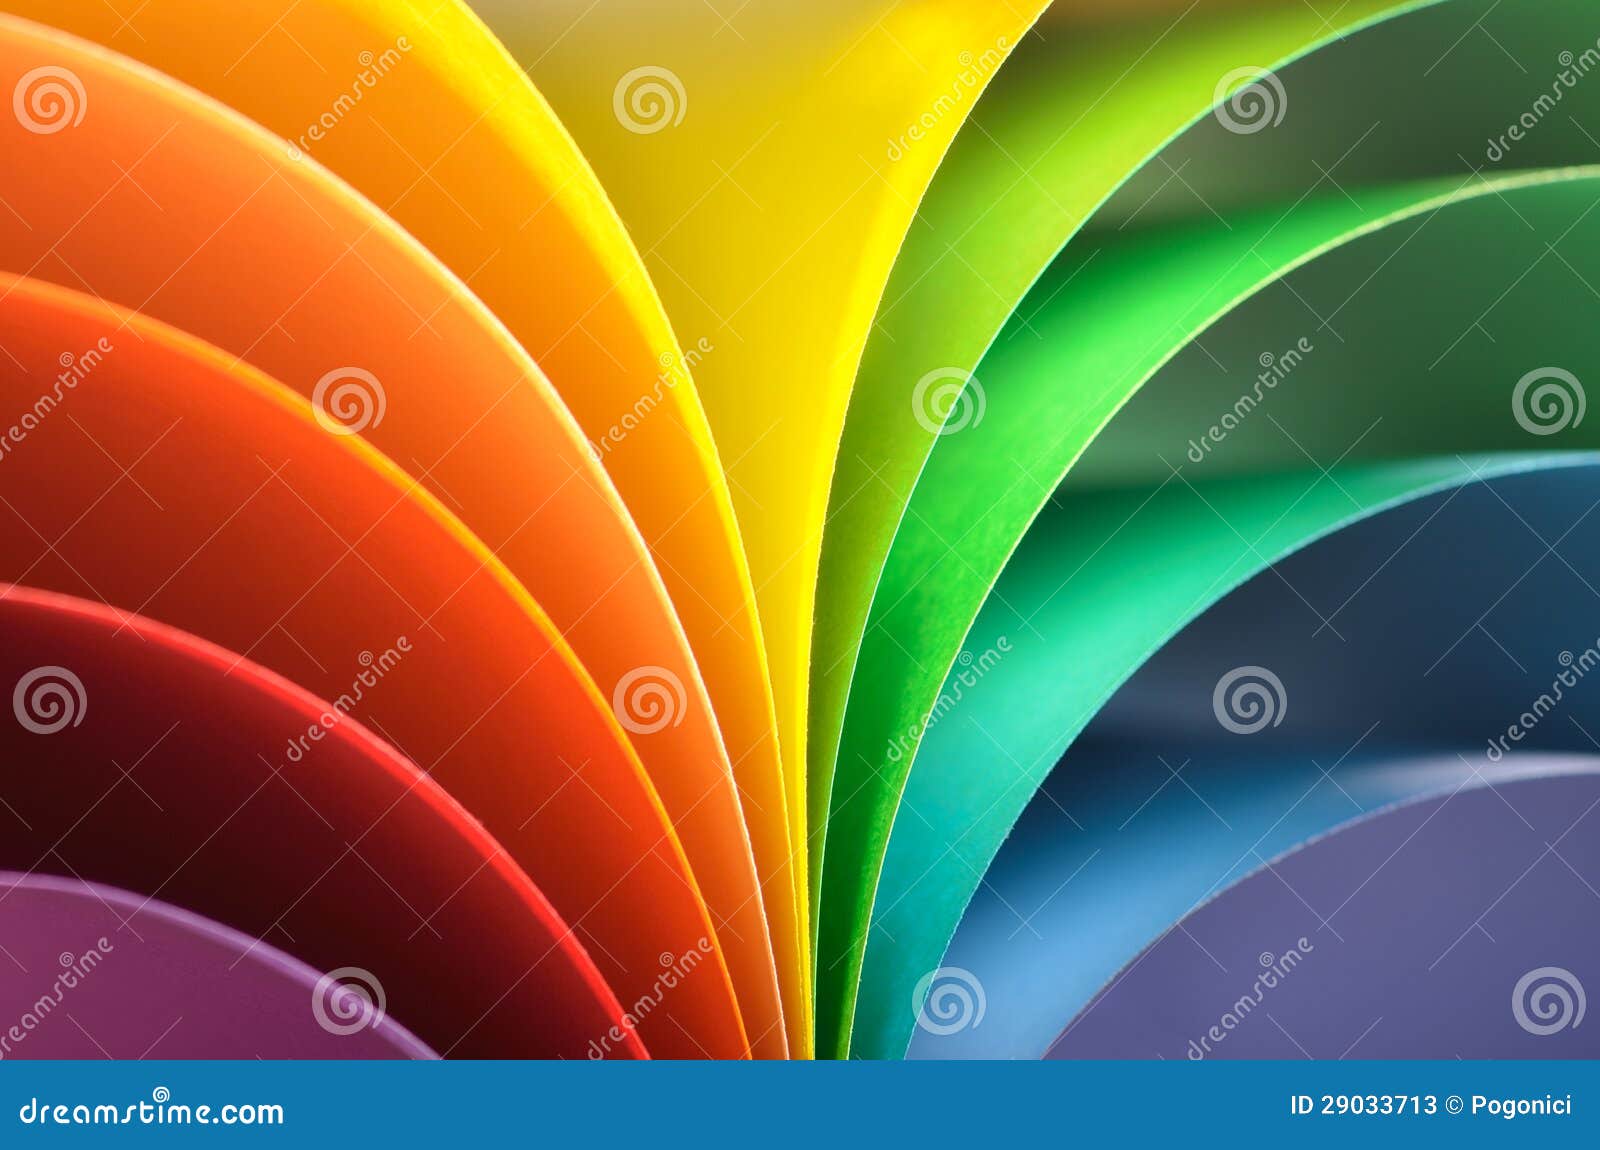 Rainbow background stock image. Image of elliptical, backdrop - 29033713